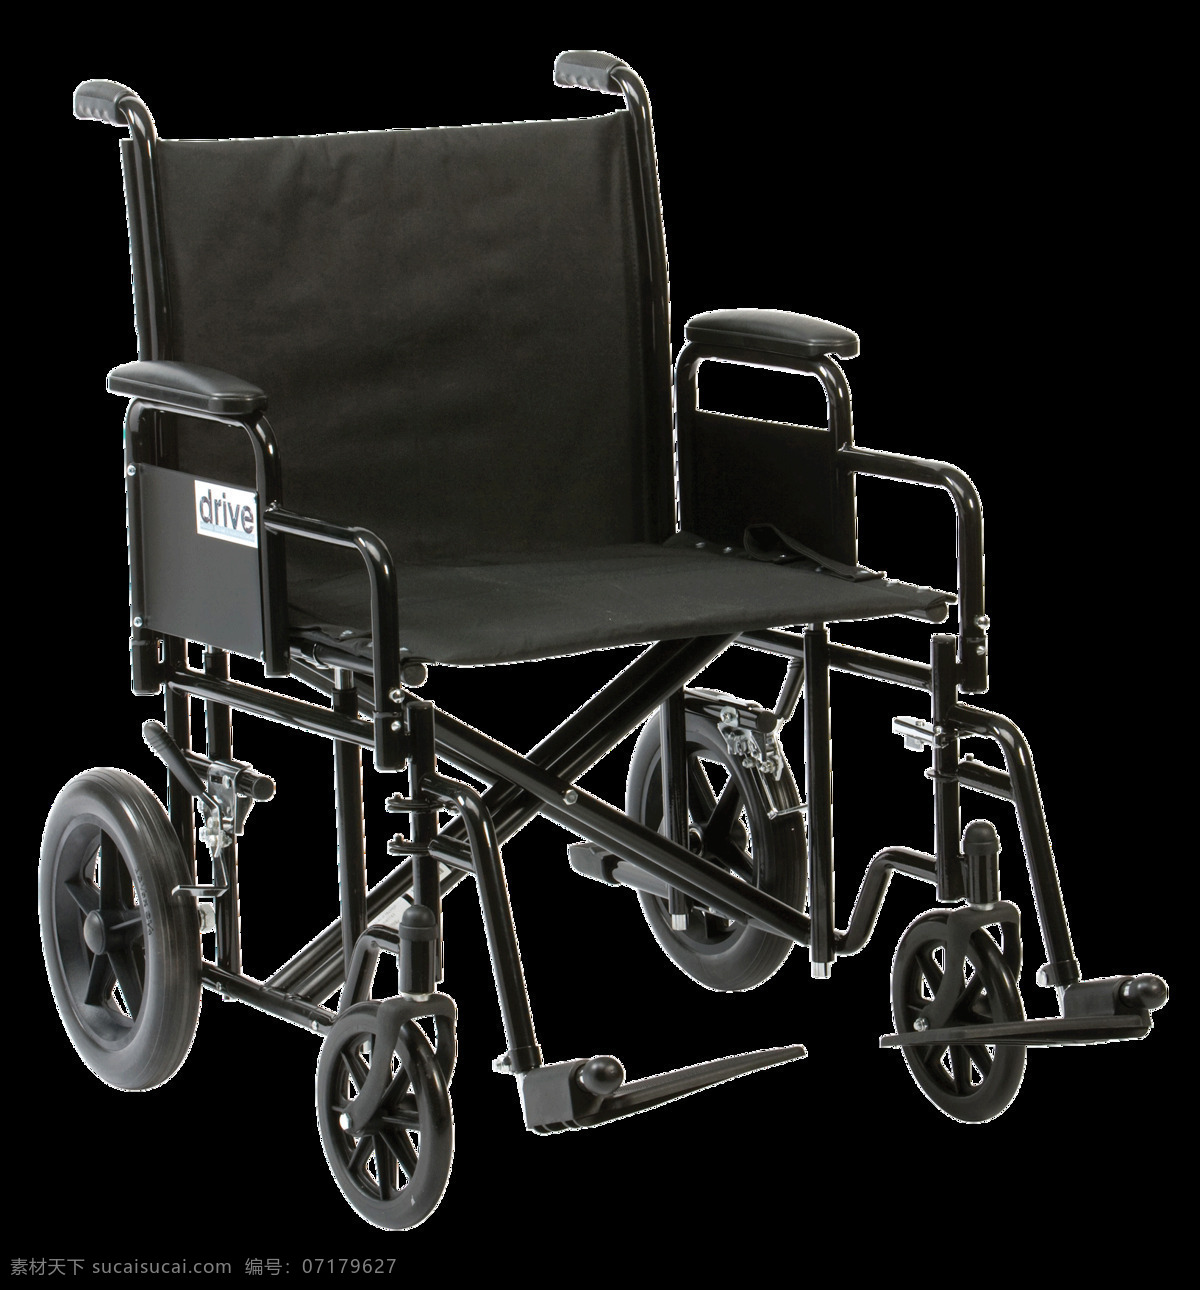 医院 轮椅 图 免 抠 透明 层 木轮椅 越野轮椅 小轮轮椅 手摇轮椅 轮椅轮子 车载轮椅 老年轮椅 竞速轮椅 轮椅设计 残疾轮椅 折叠轮椅 智能轮椅 医院轮椅 轮椅图片